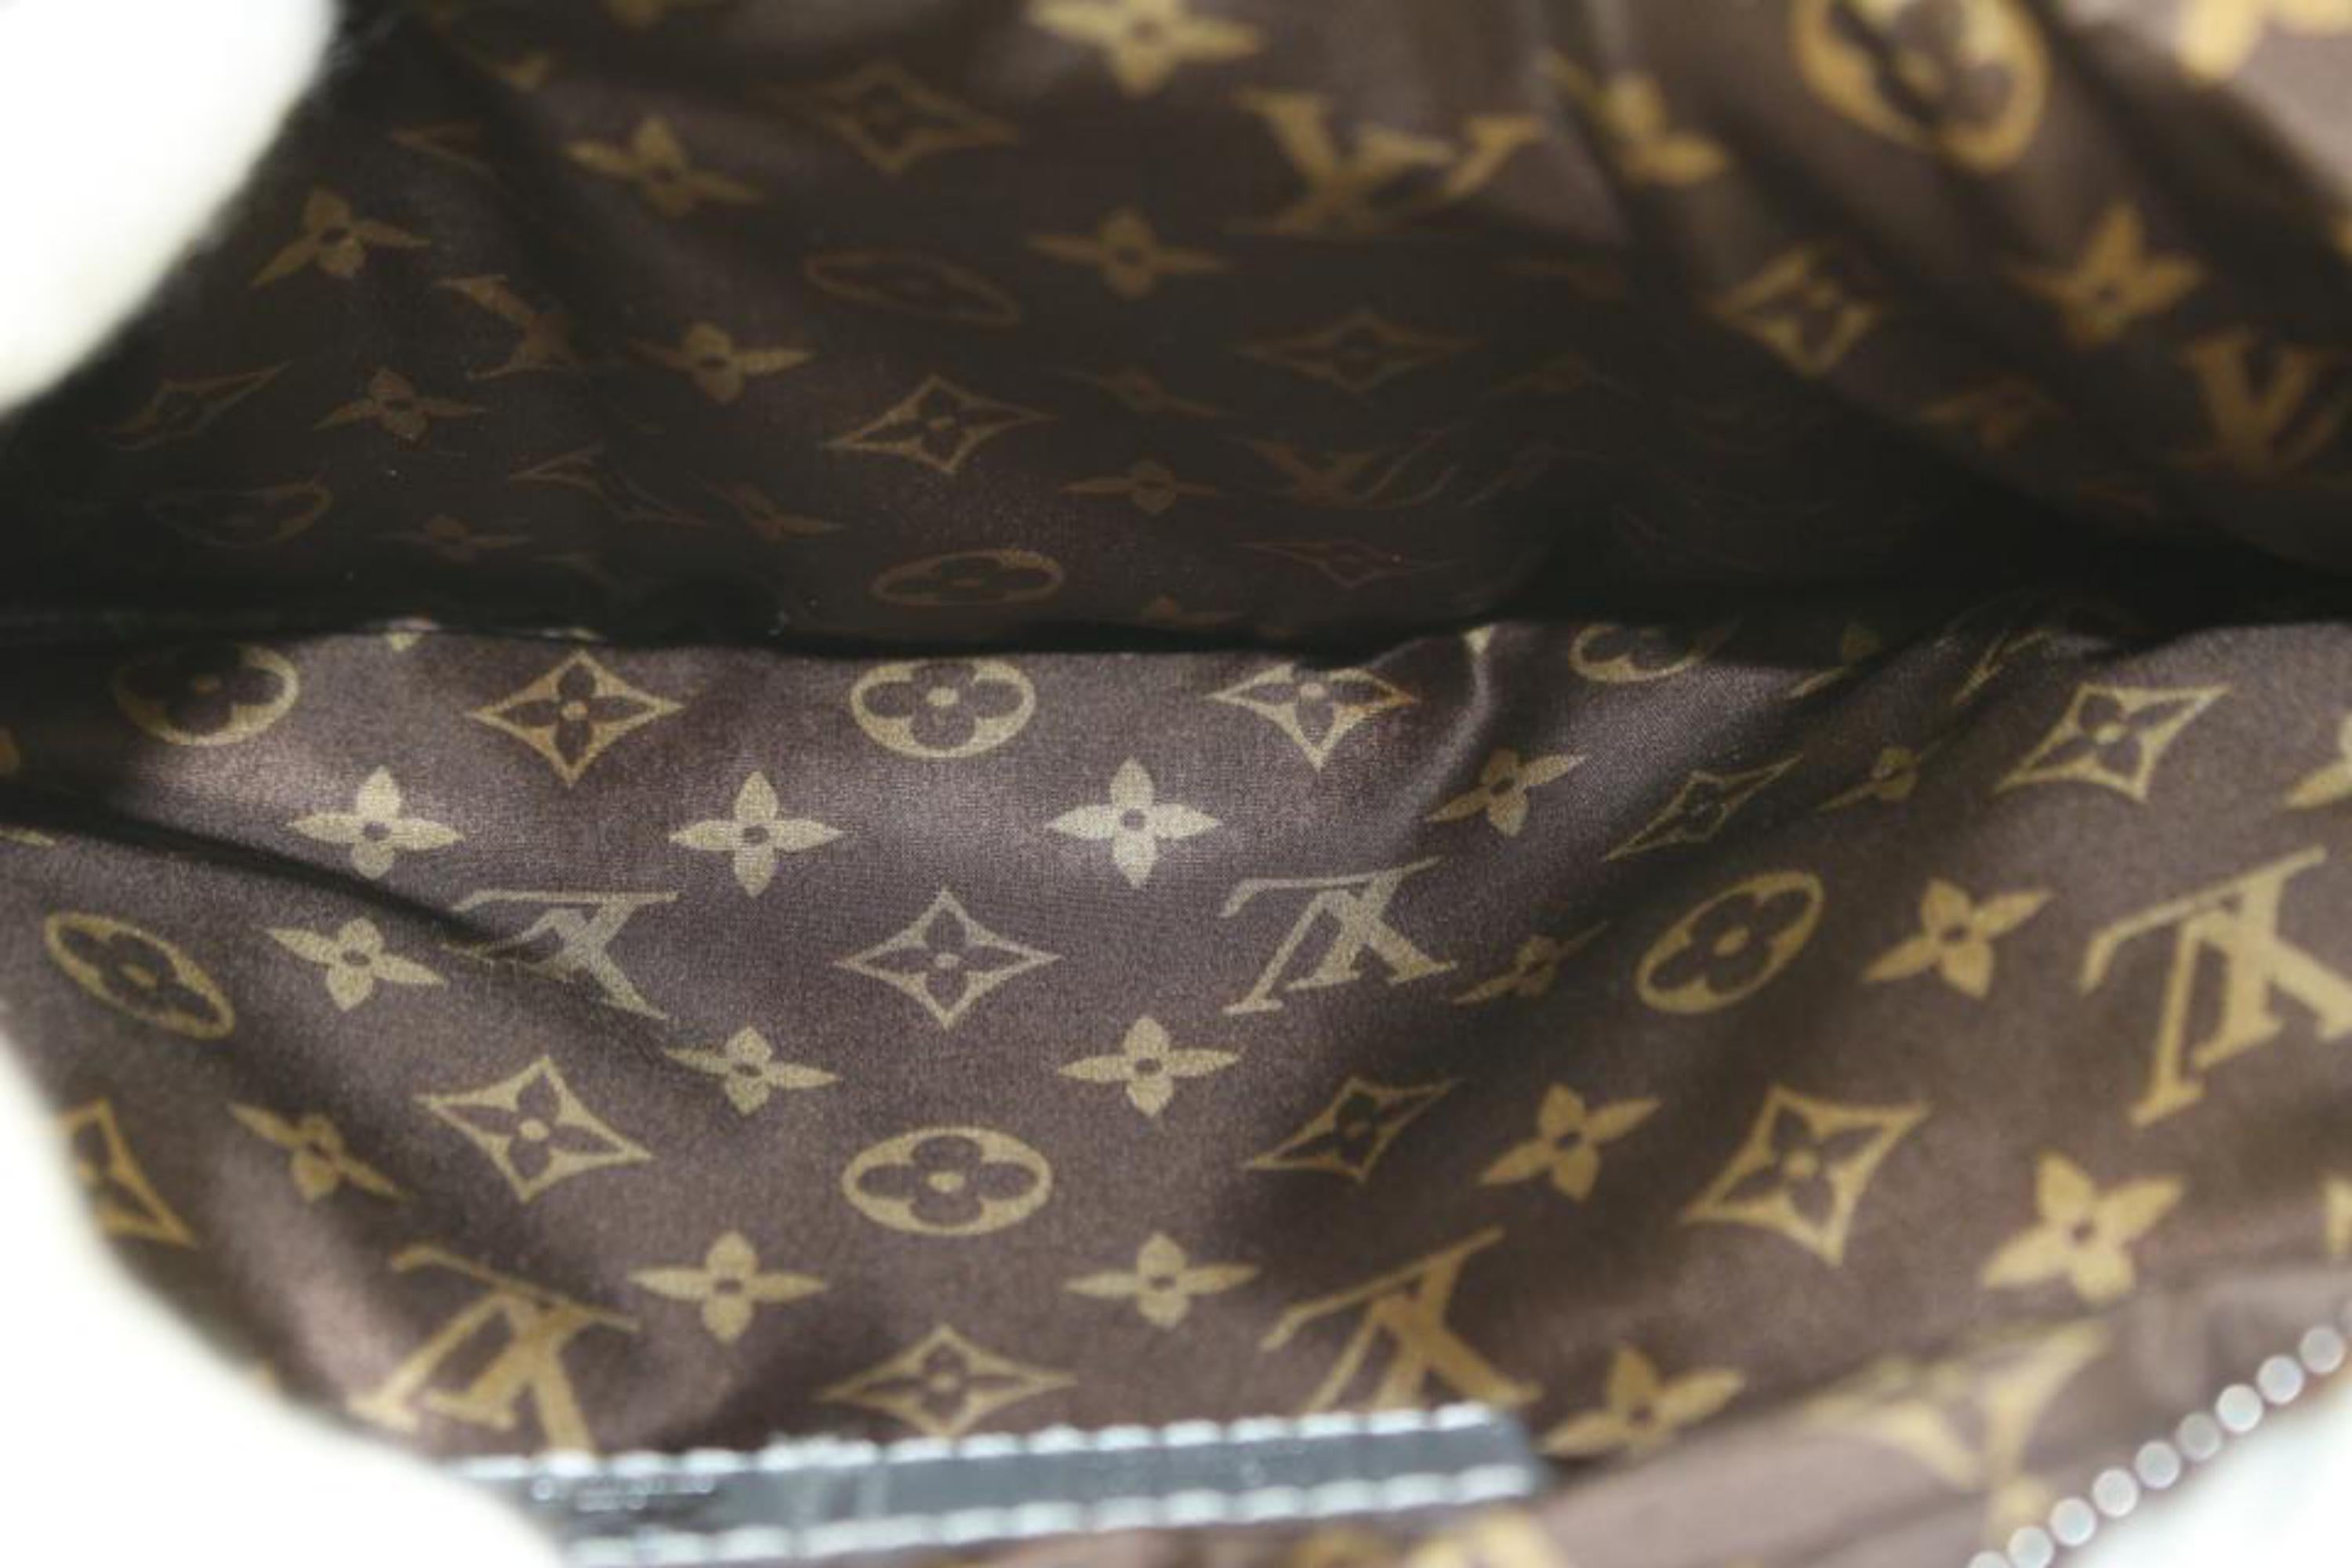 Louis Vuitton 2023 New Square Bag #lvbag 